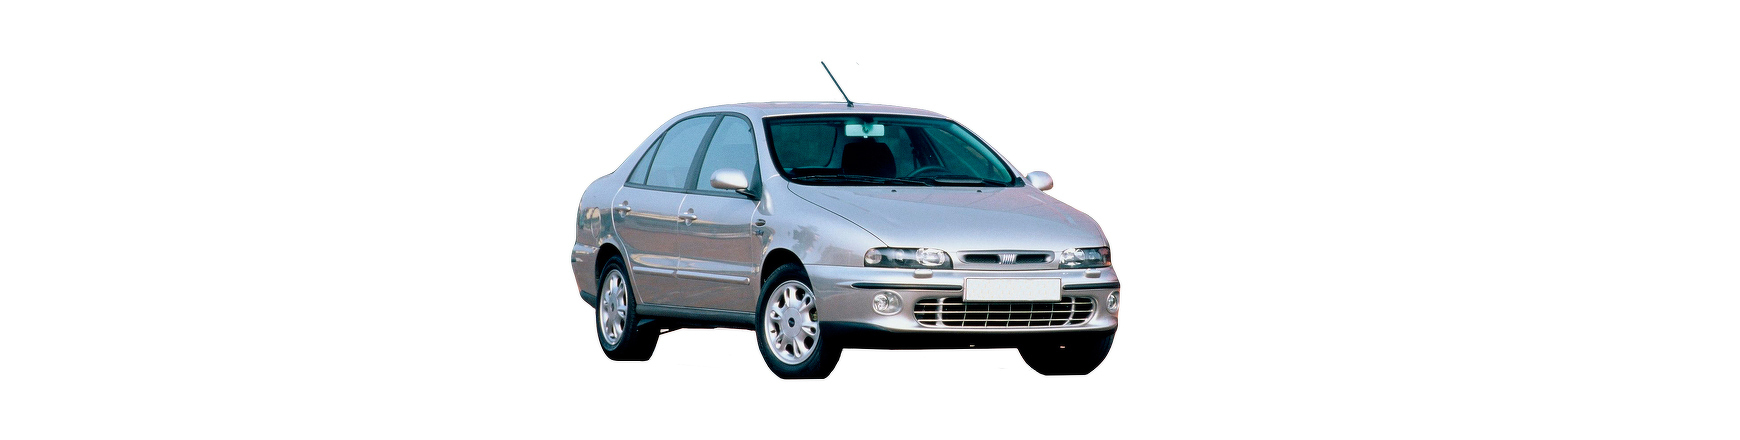 Recambios de Fiat Marea de 1996, 1997, 1998, 1999, 2000, 2001, 2002...